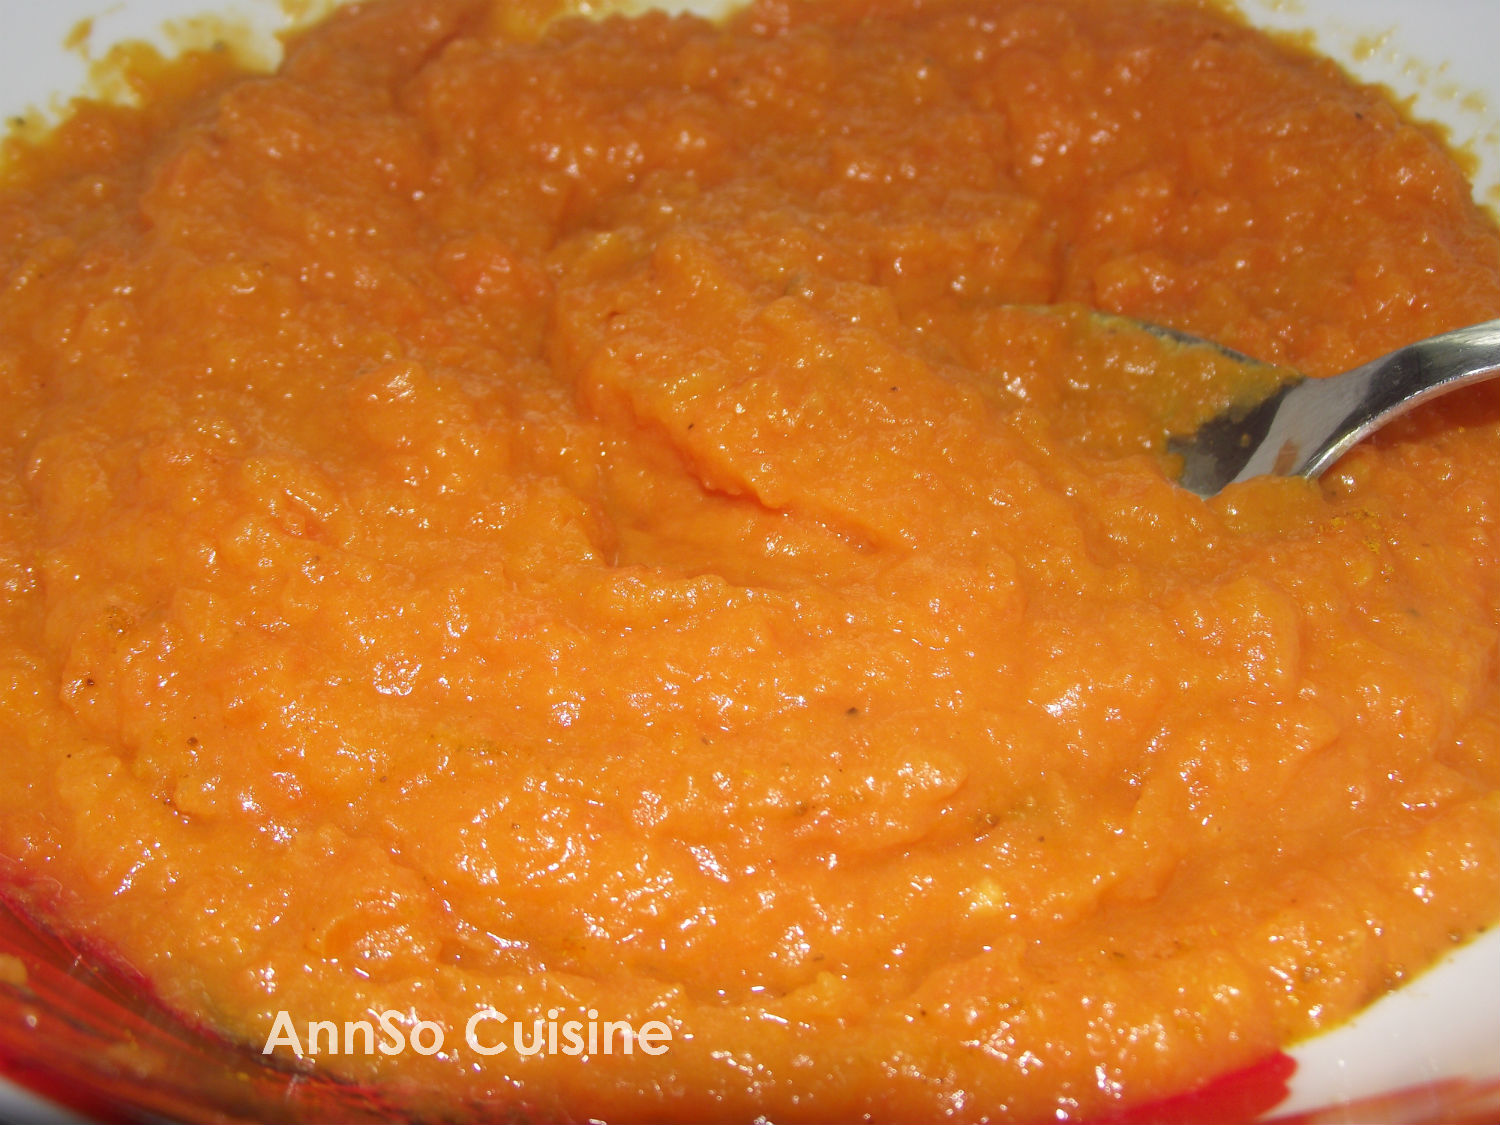 Purée de patate douce et carottes annso-cuisine.fr AnnSo Cuisine